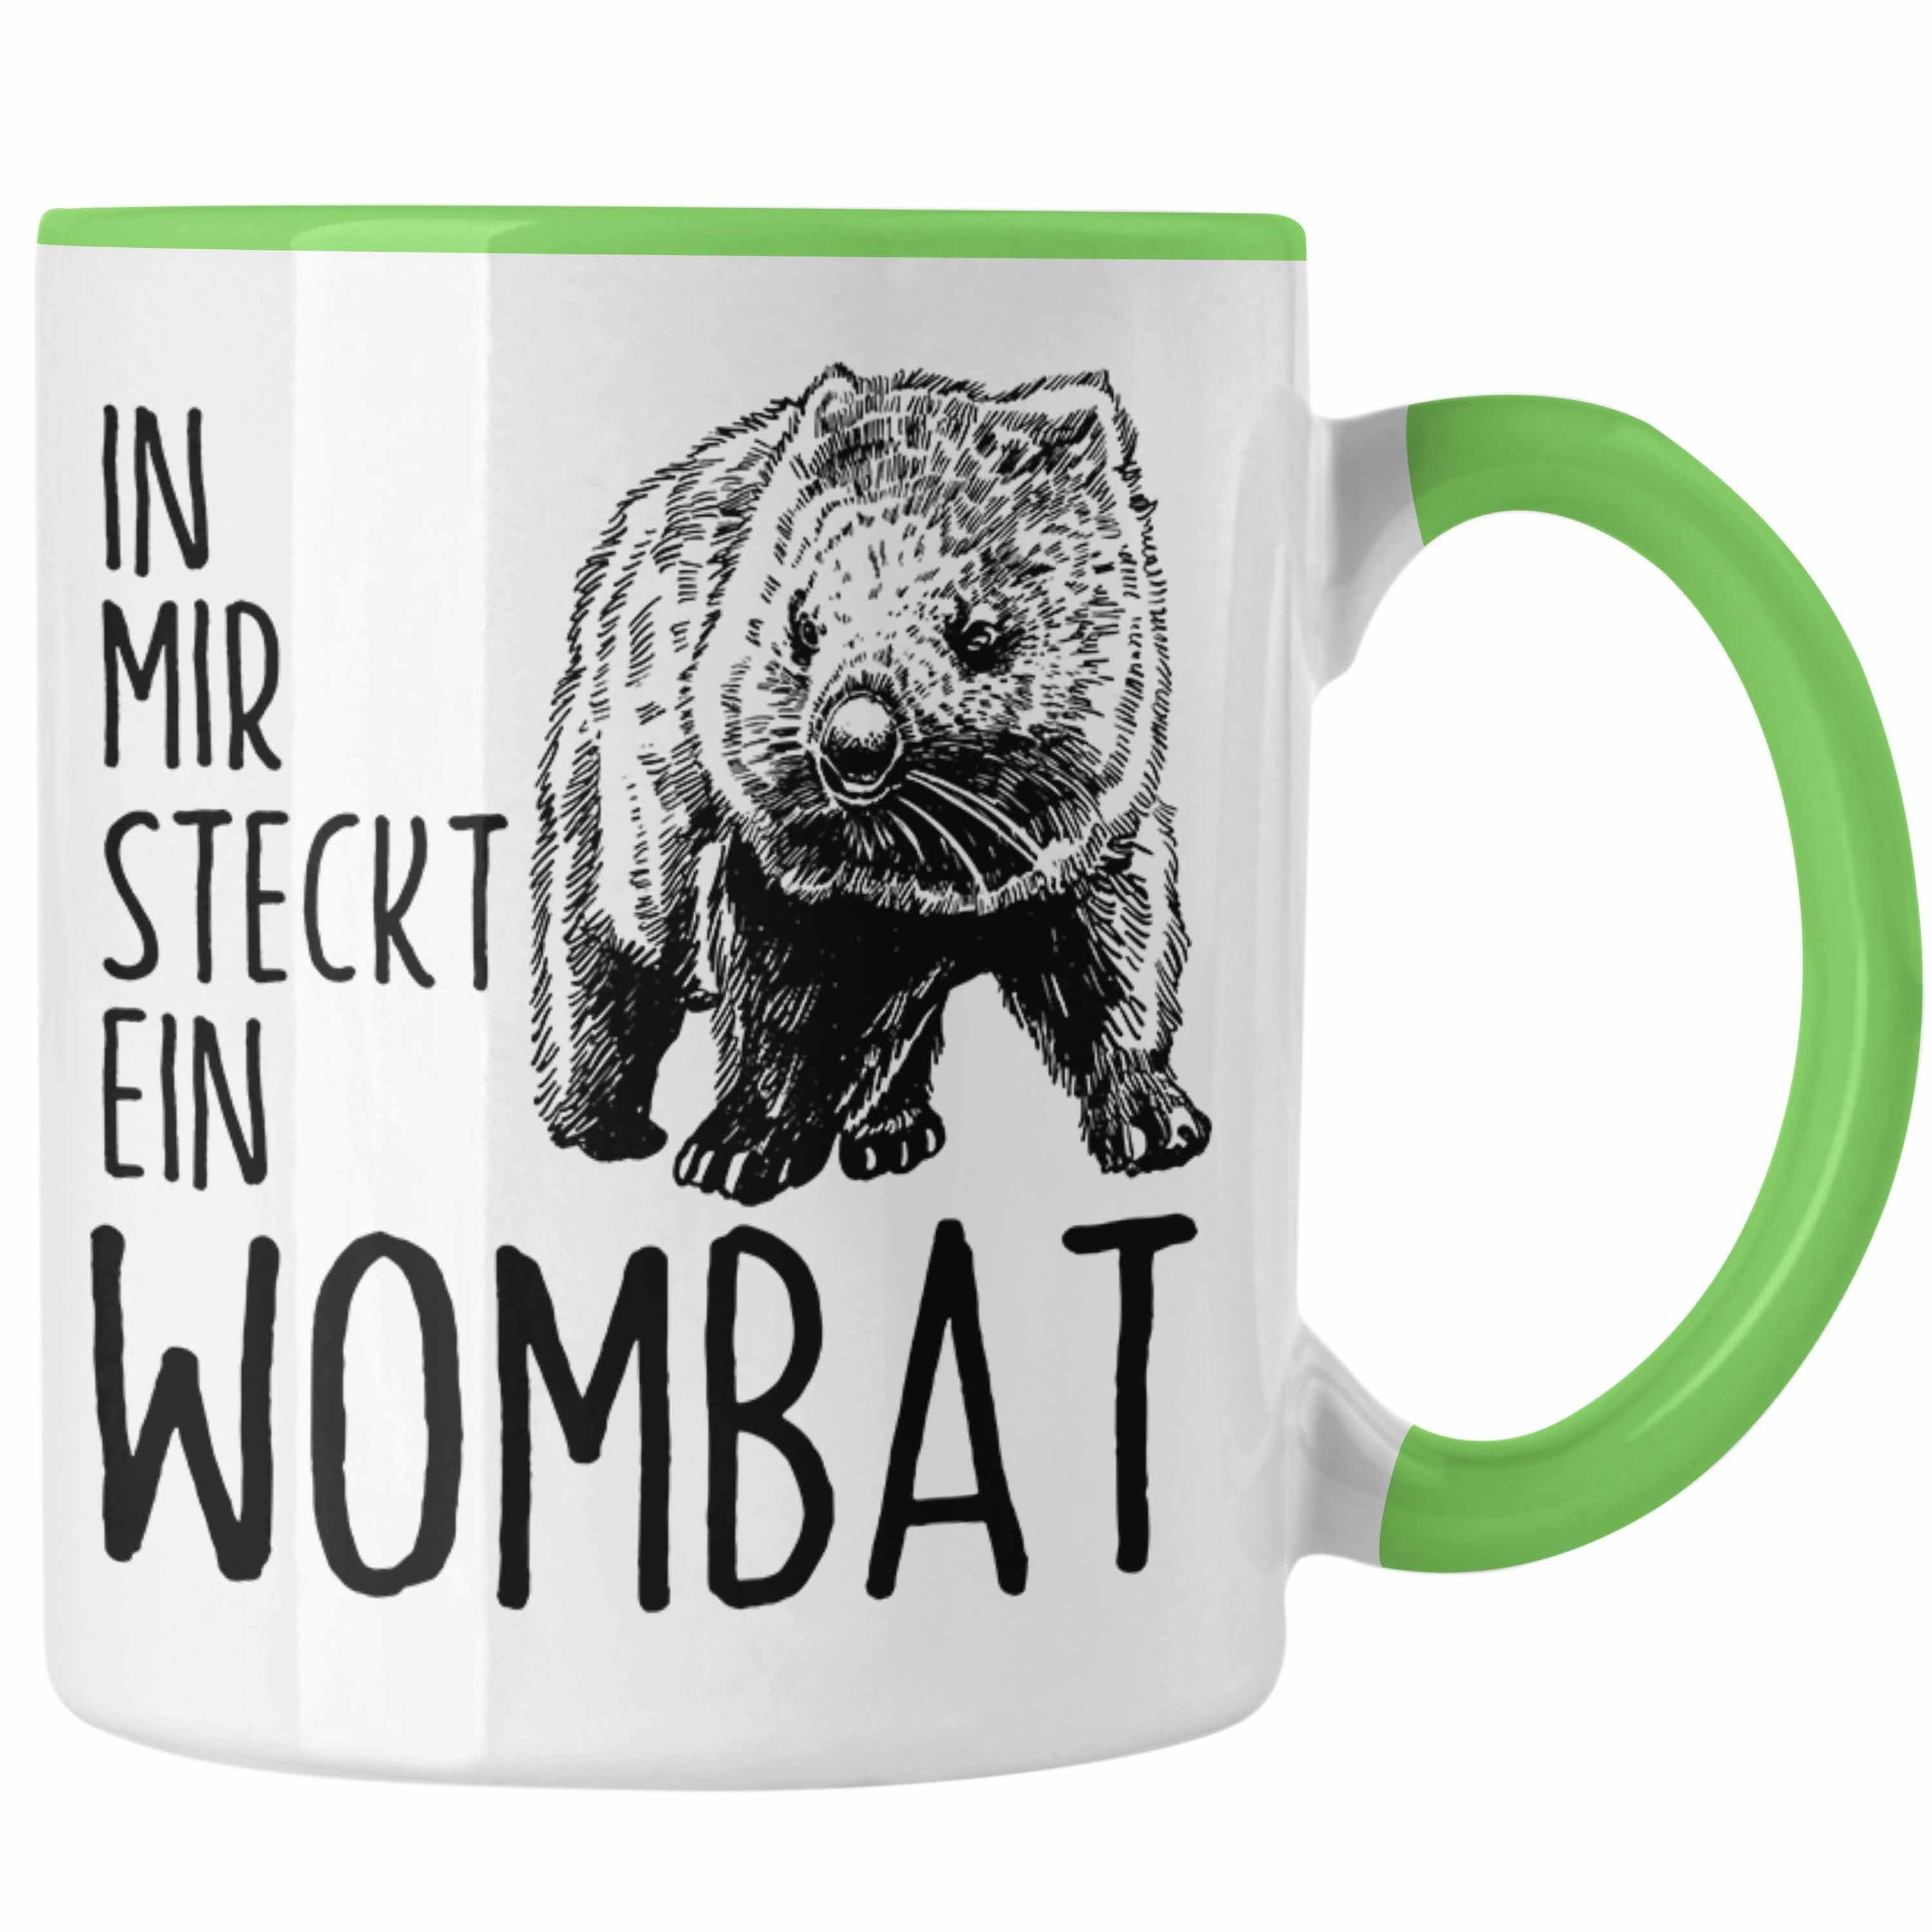 Trendation Tasse Wombat Tasse Wombat Mir Geschenk Liebhaber In für Ein Steckt Wombat Grün